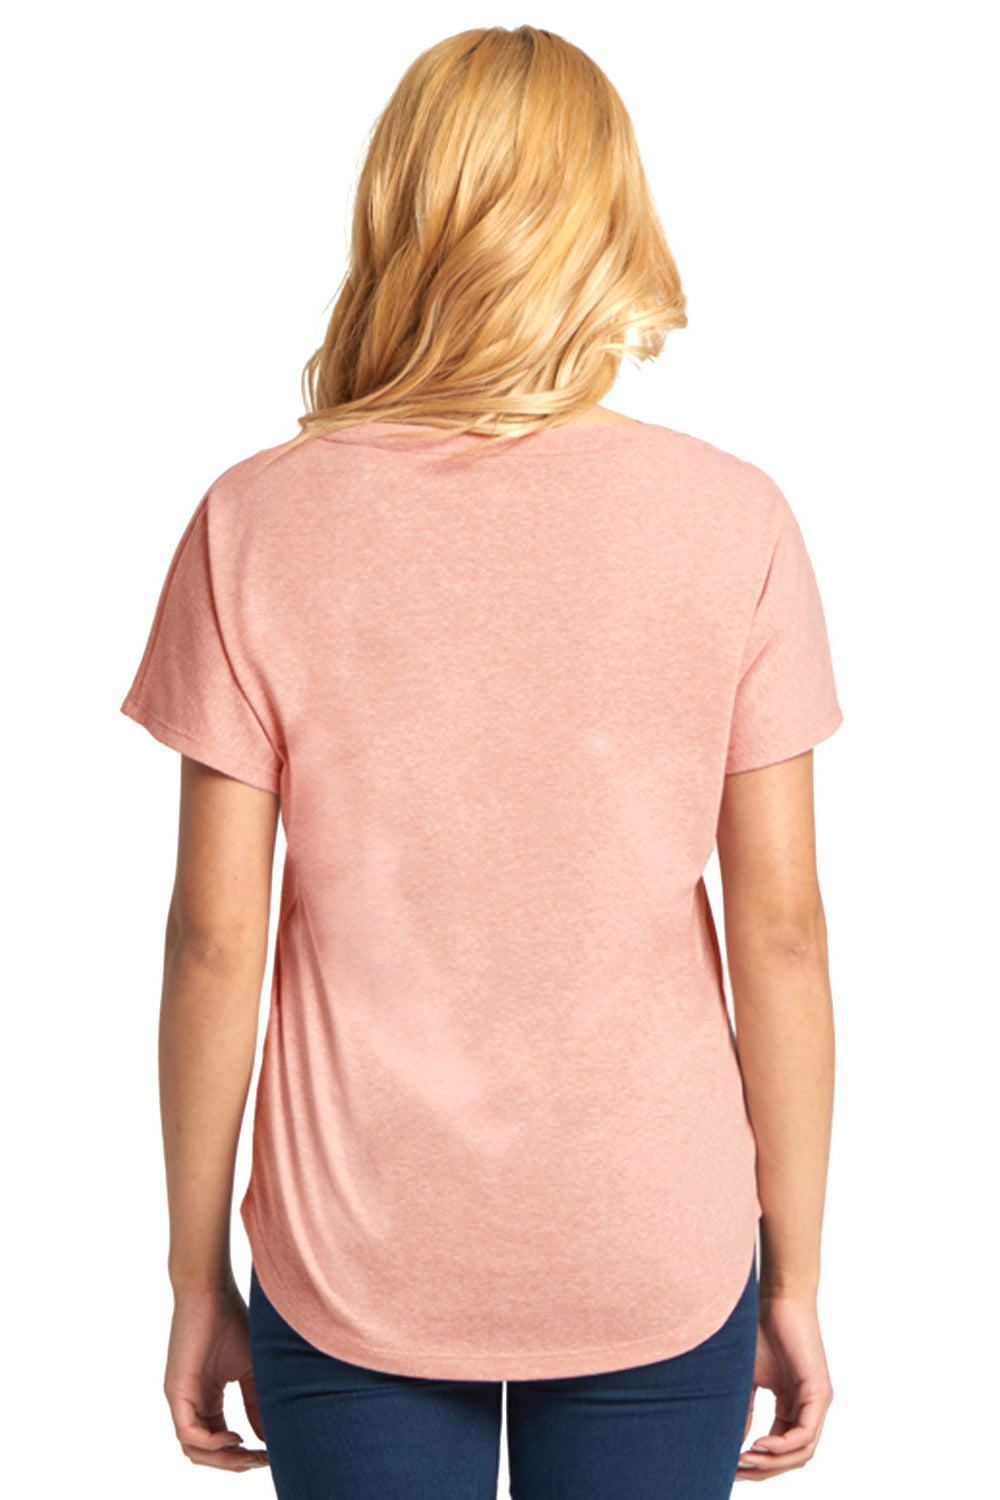 Next Level 6760 Womens Dolman Jersey Short Sleeve Scoop Neck T-Shirt Desert Pink Back